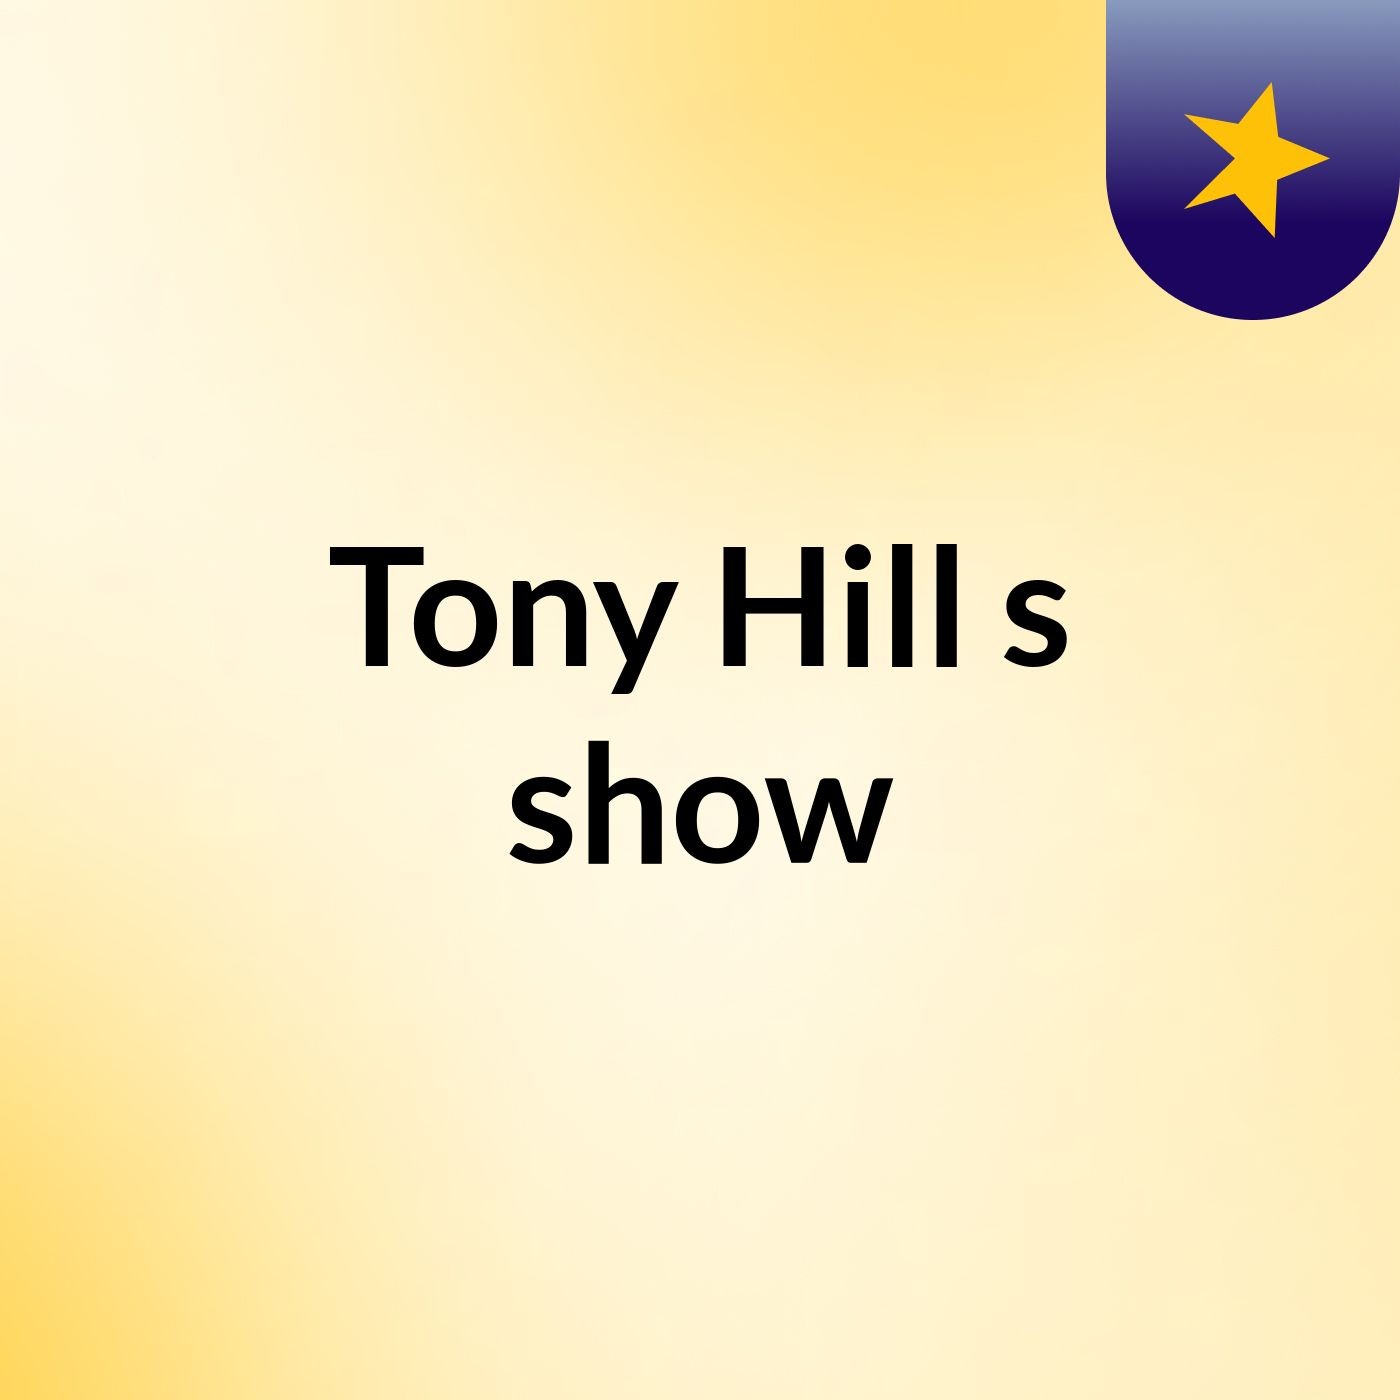 Tony Hill's show